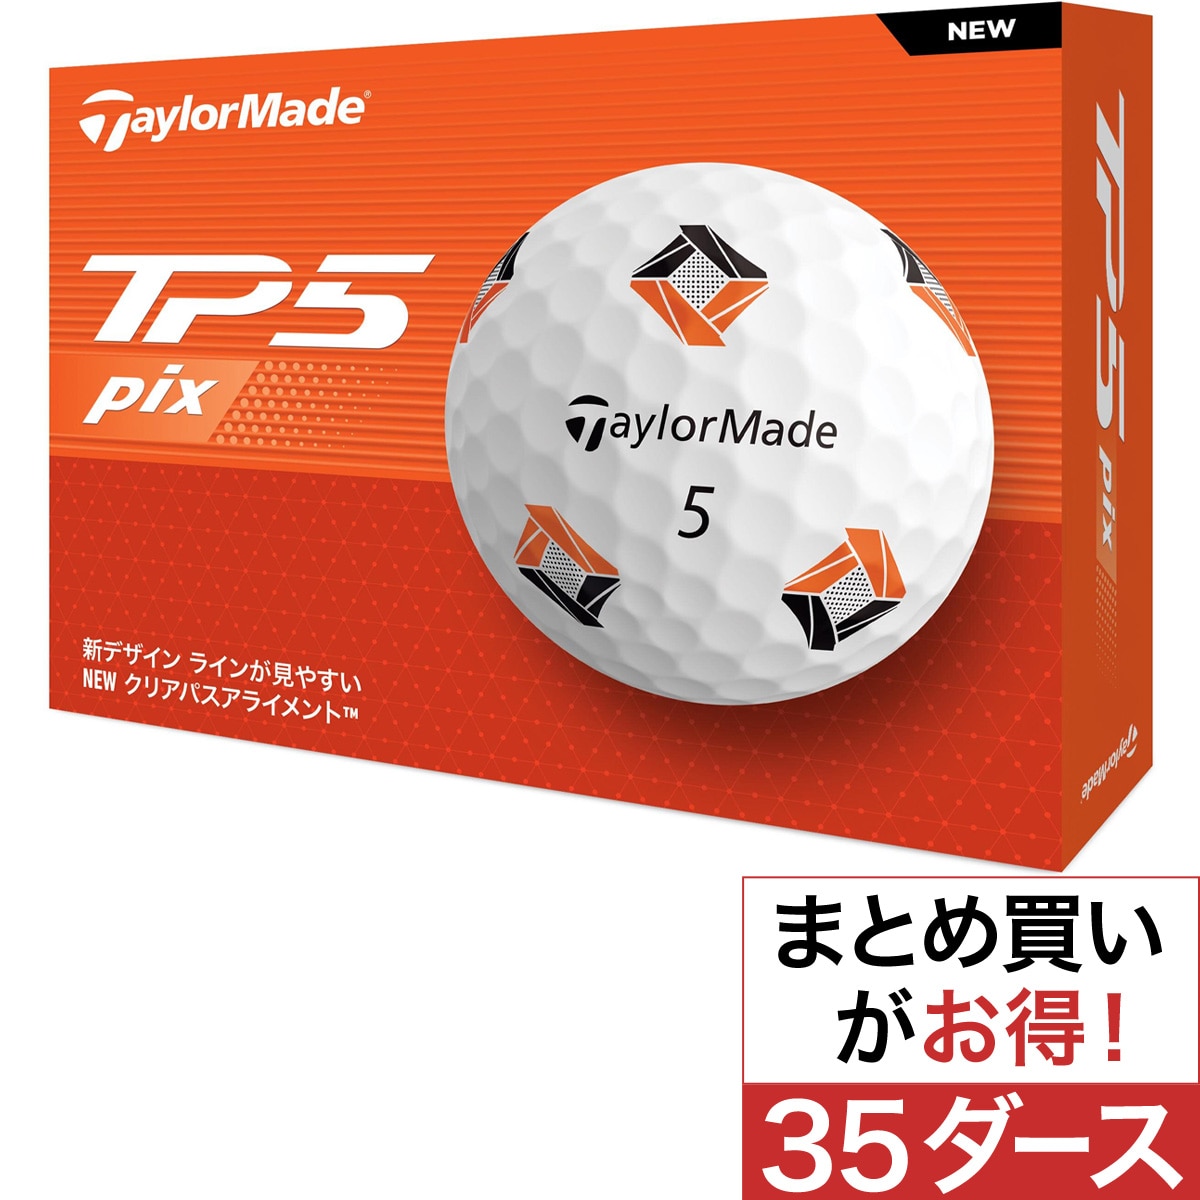 TP5 pix ボール 35ダースセット(ゴルフボール)